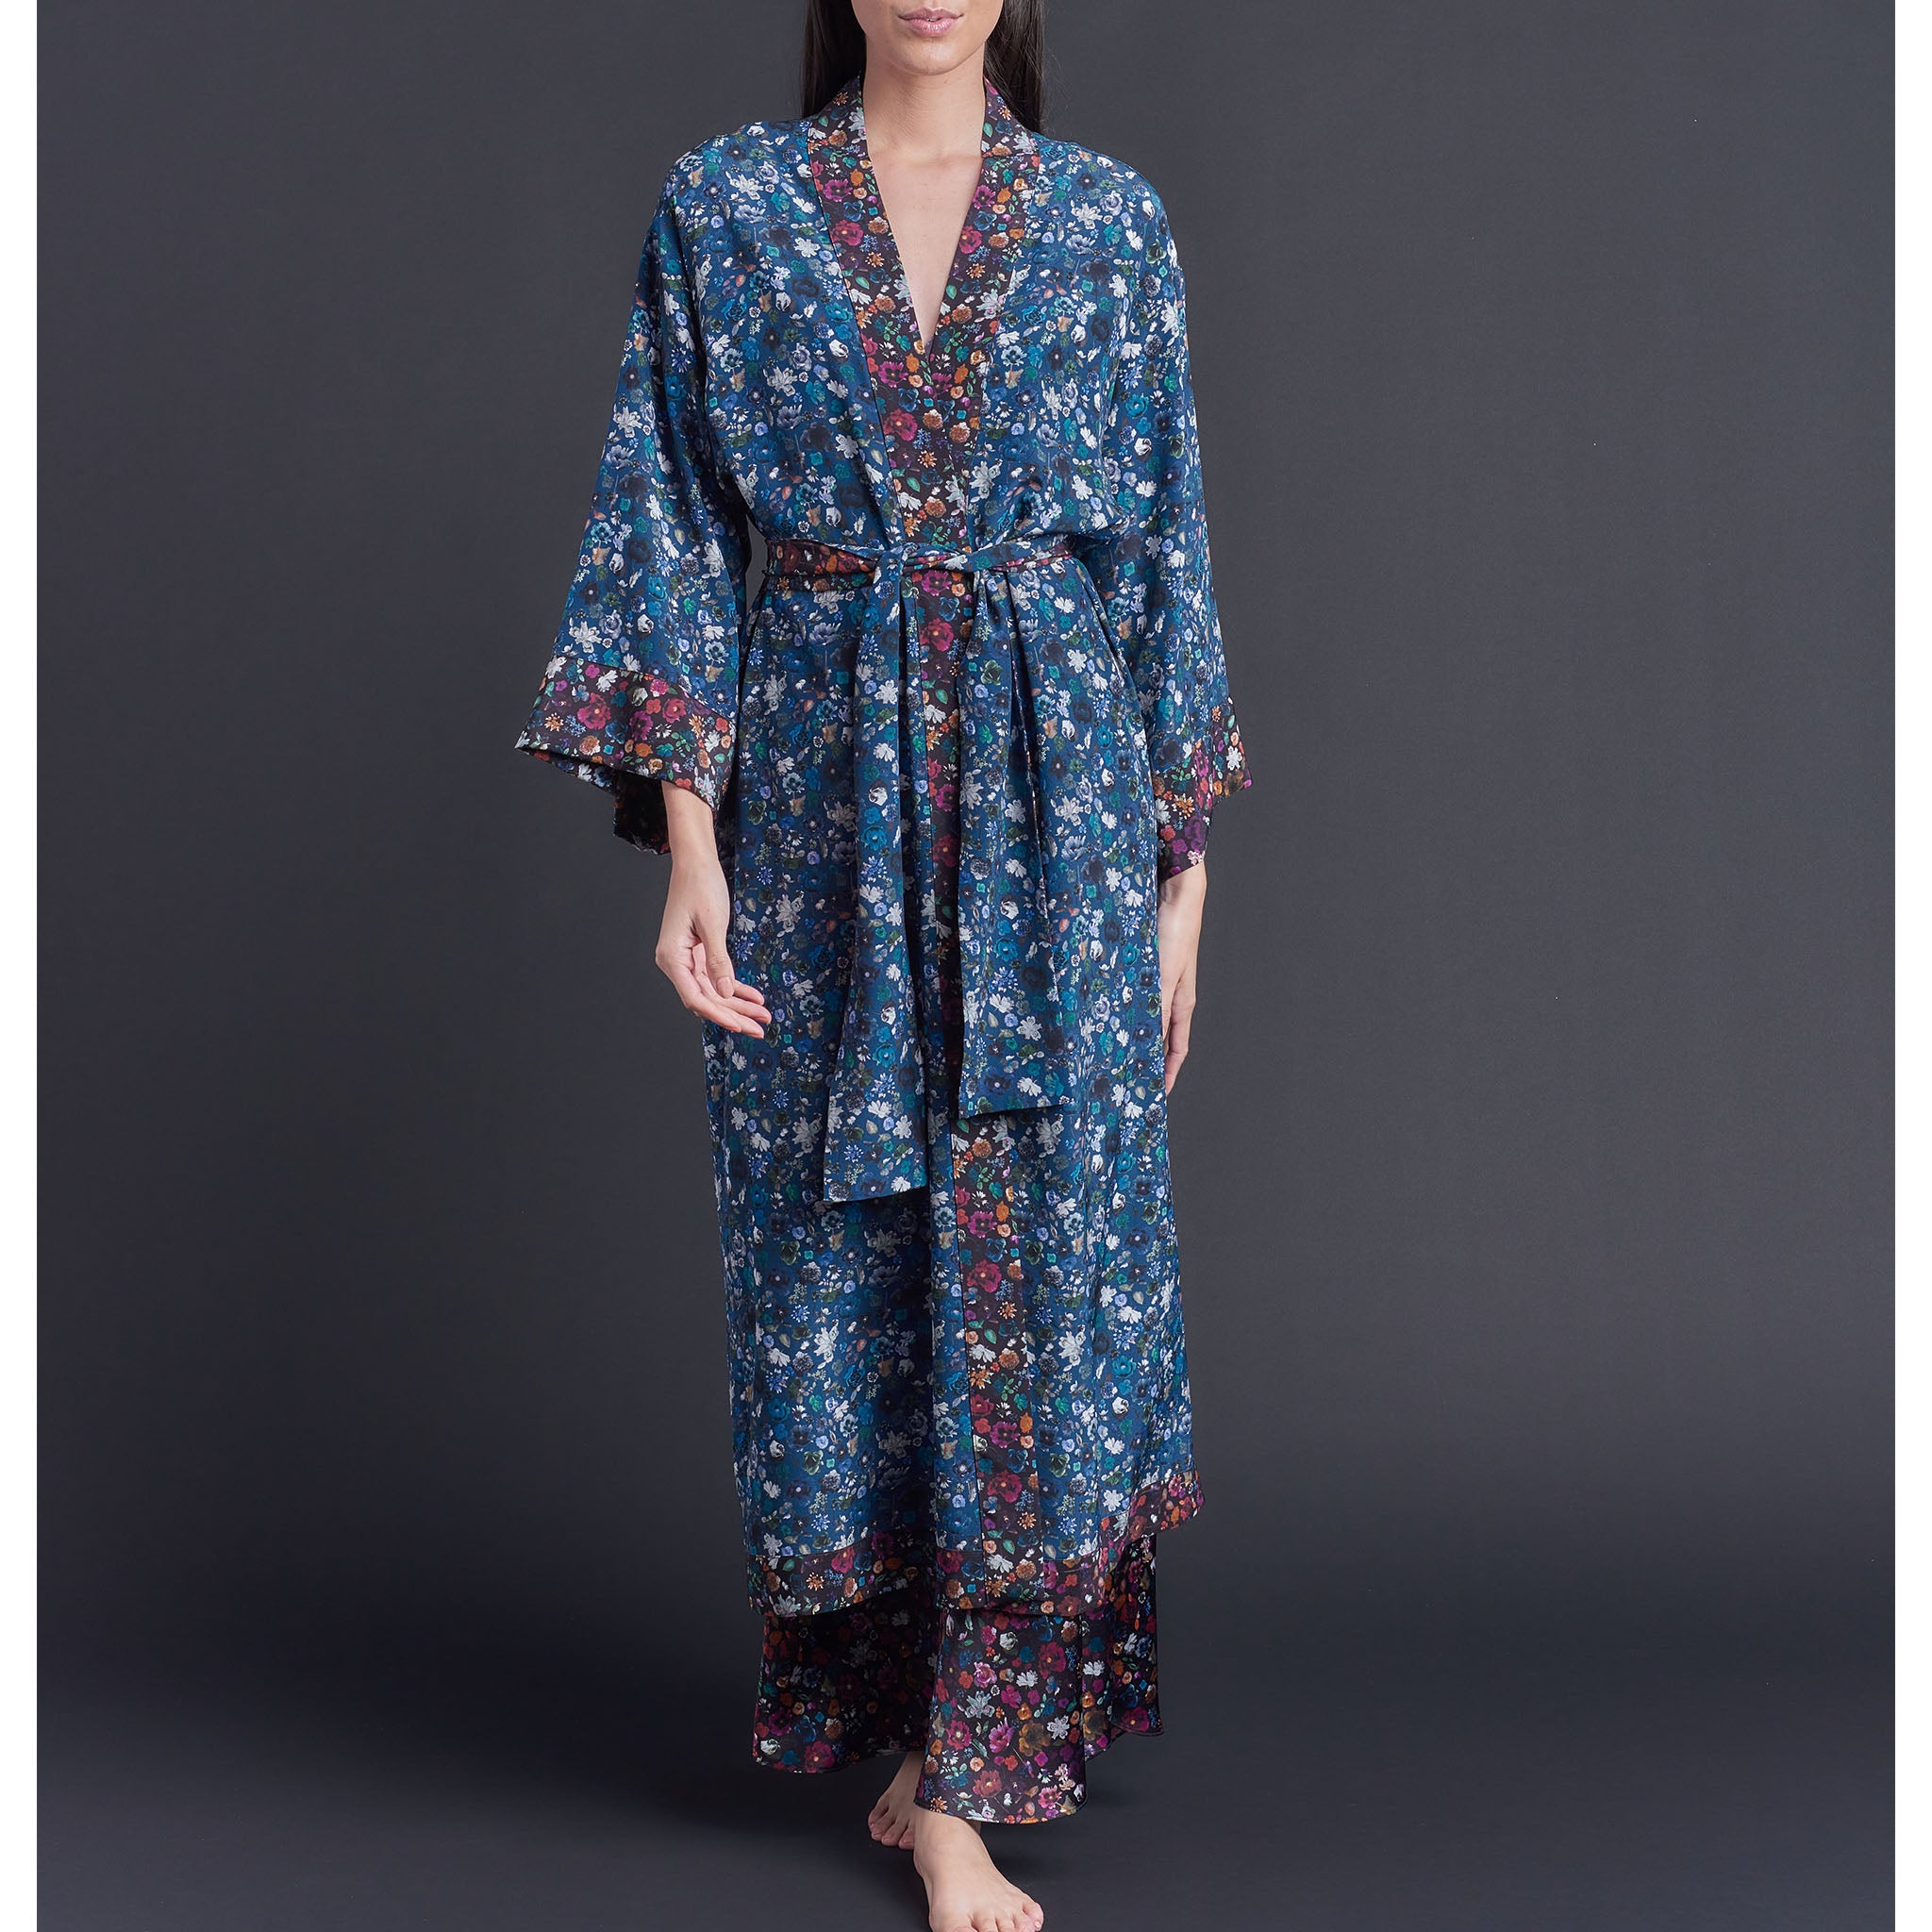 Asteria Kimono Robe in Blue Floral Edit Liberty of London Print Silk Crepe De Chine